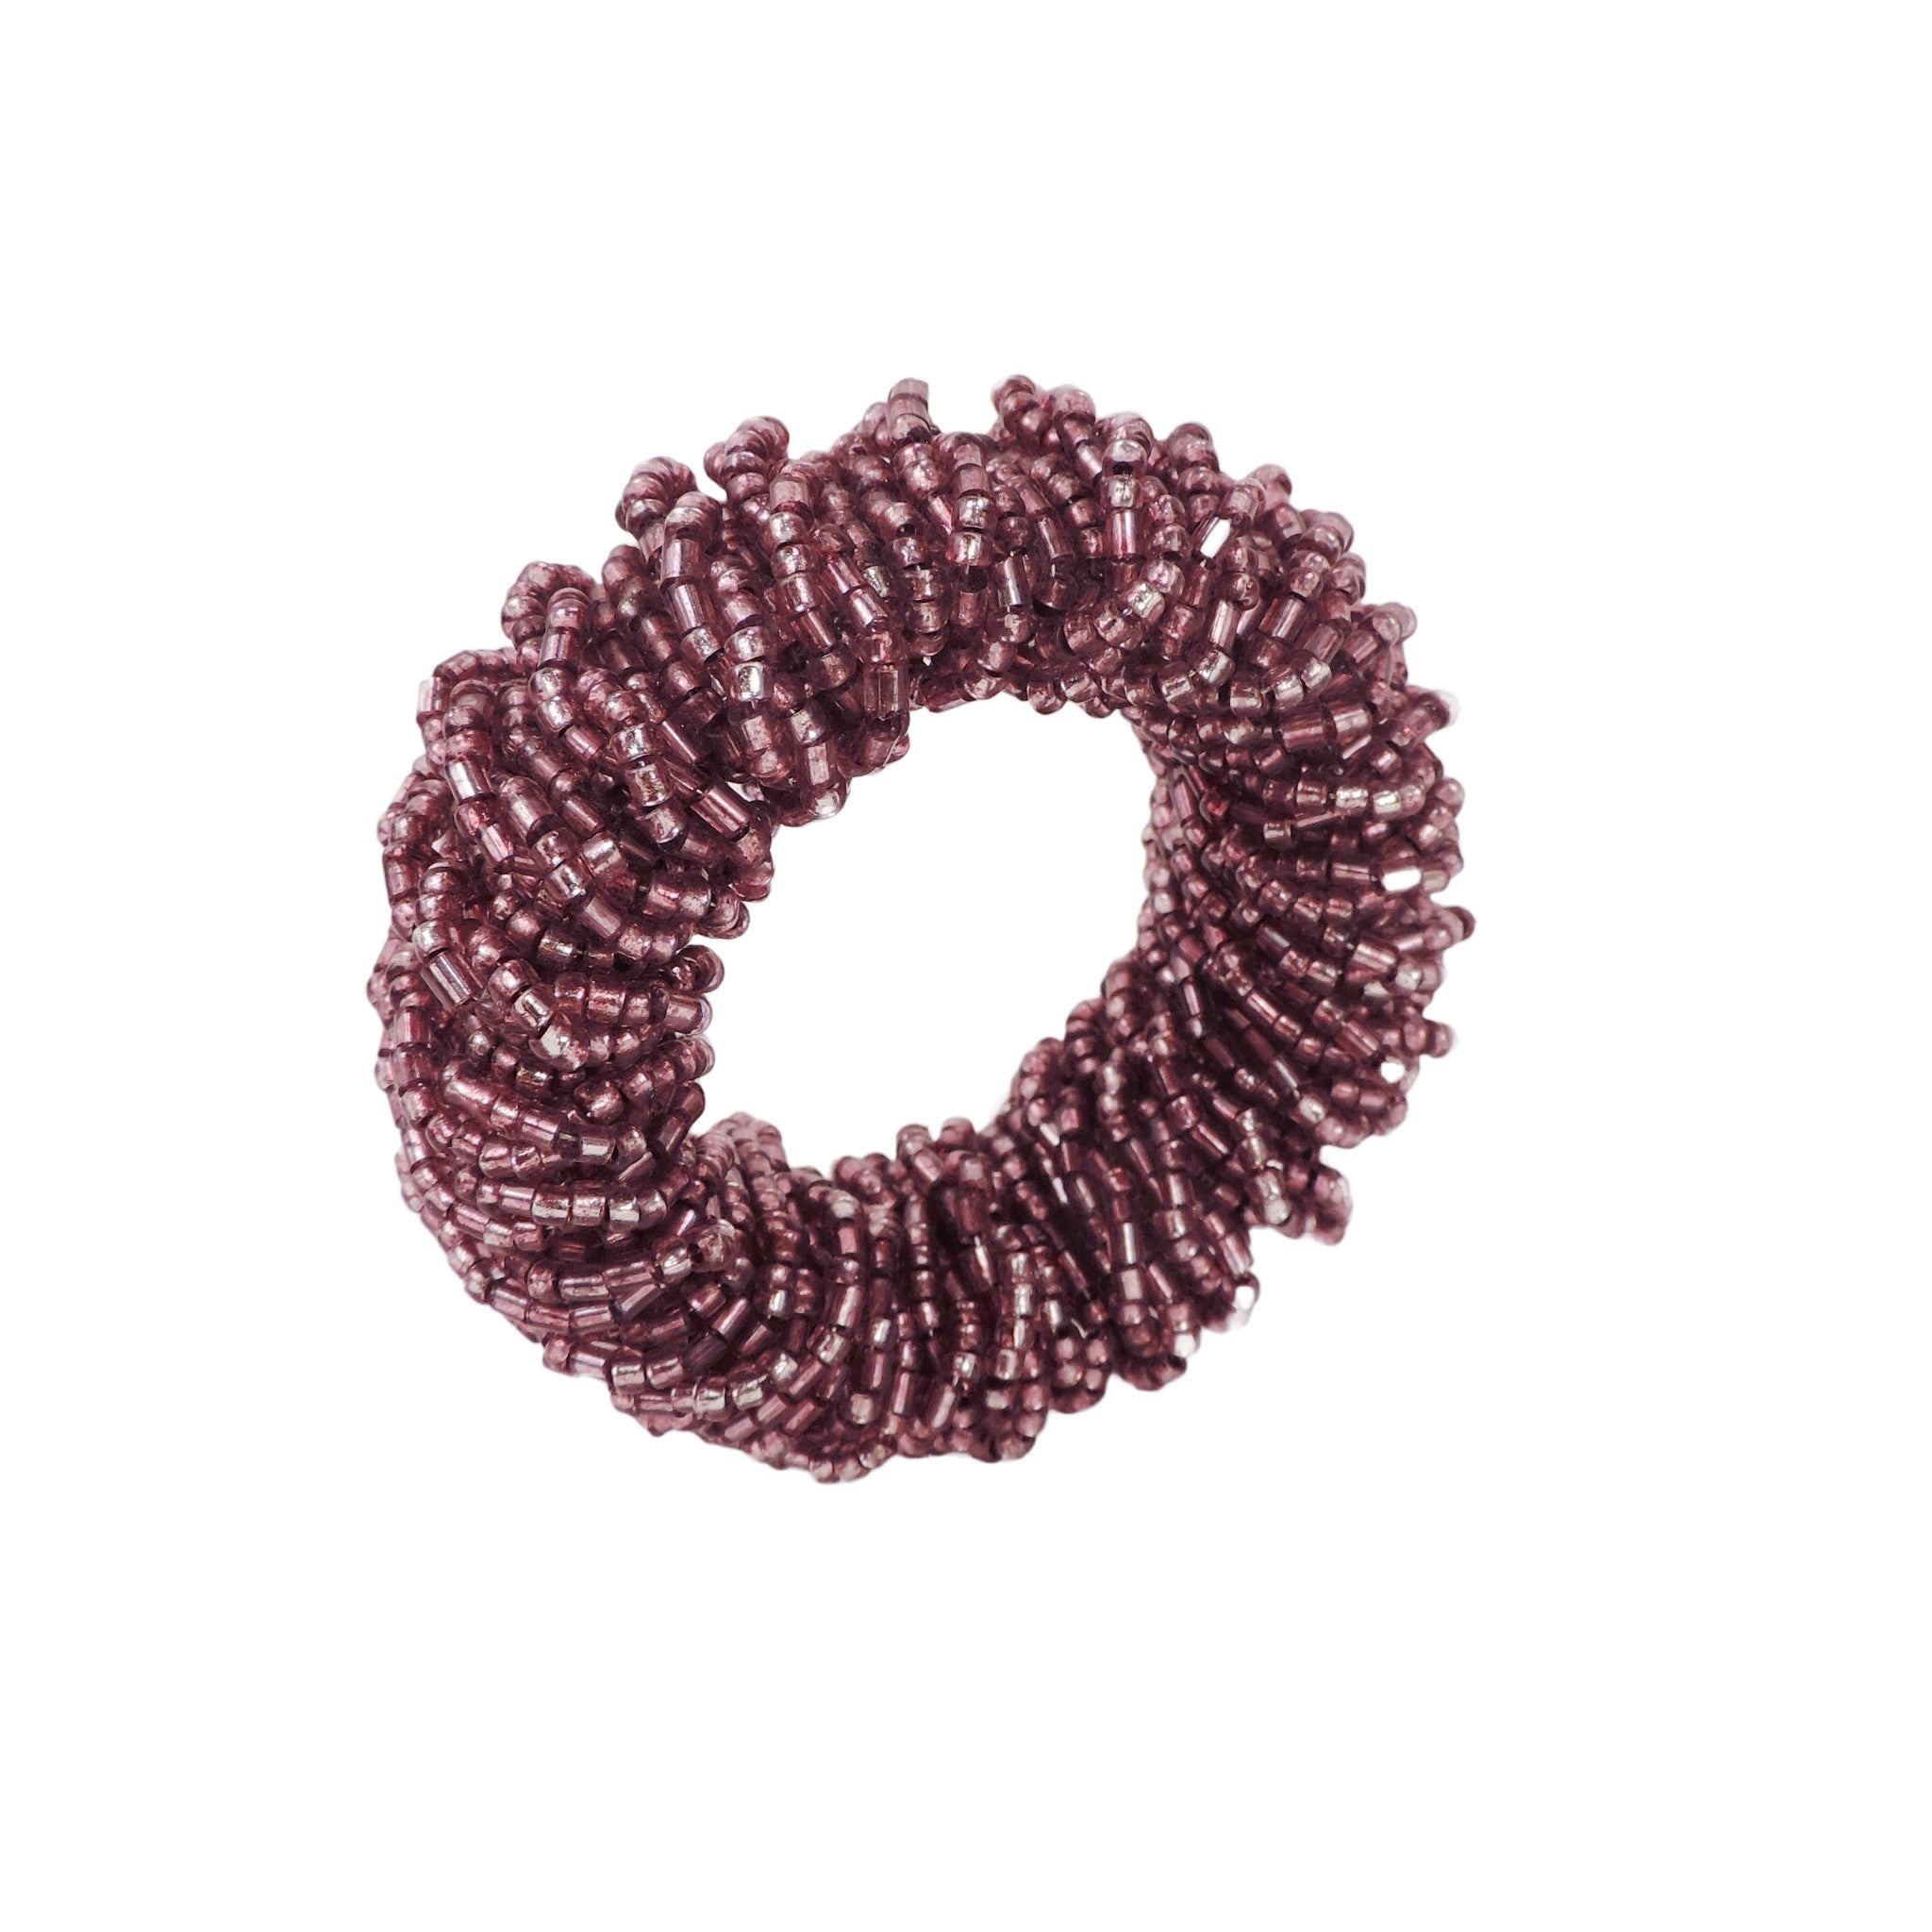 Bling-Bling Napkin Ring in Purple, Set of 4